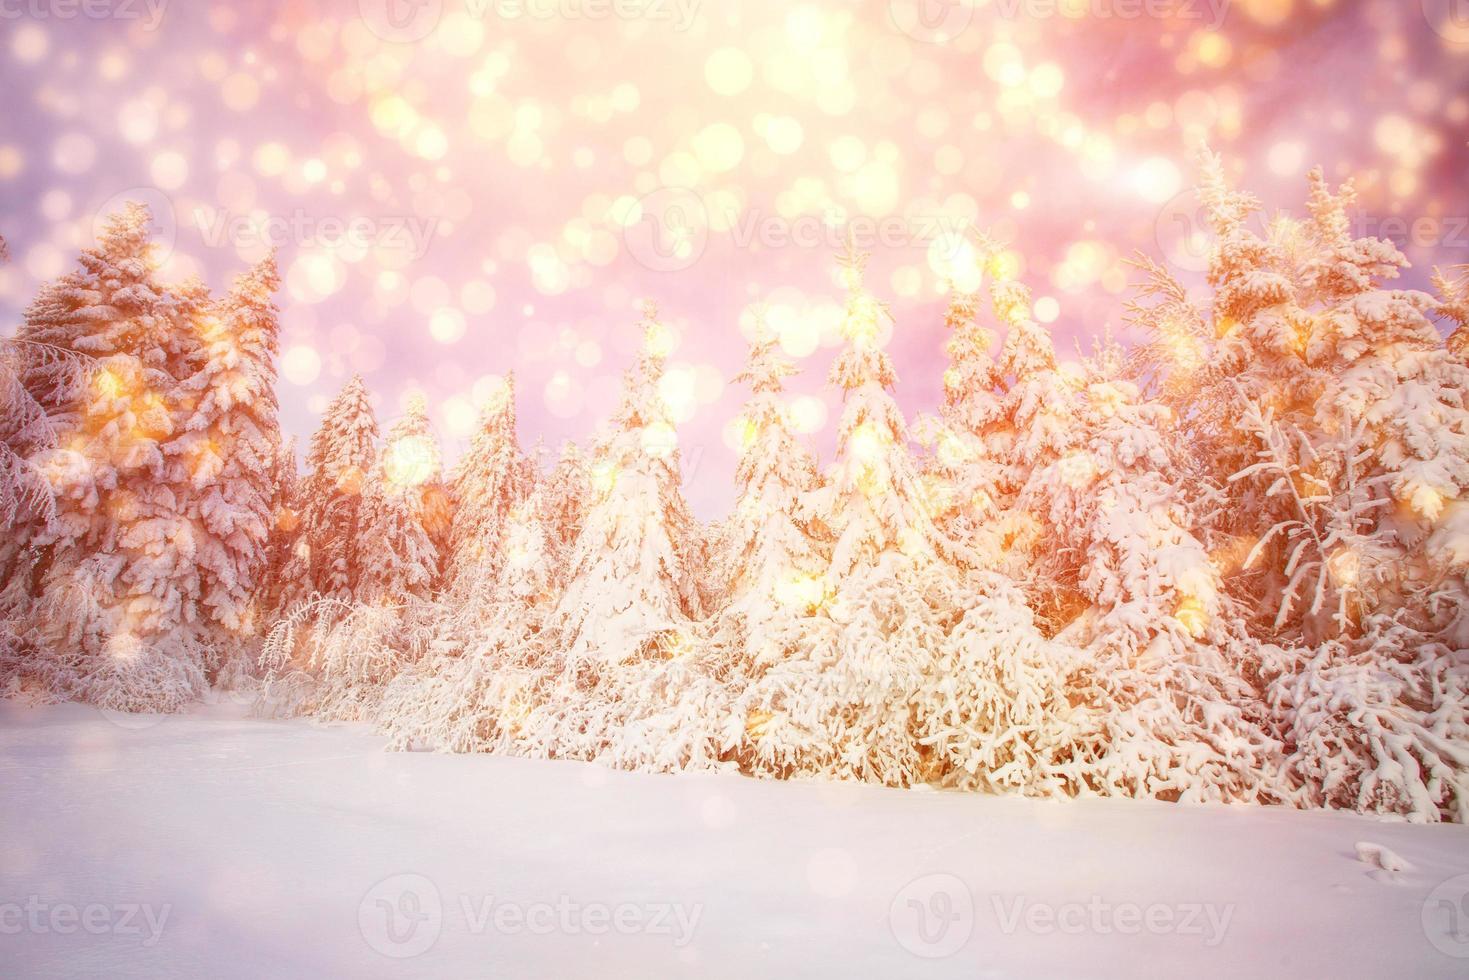 paesaggio invernale alberi innevati, sfondo bokeh con fiocco di neve foto